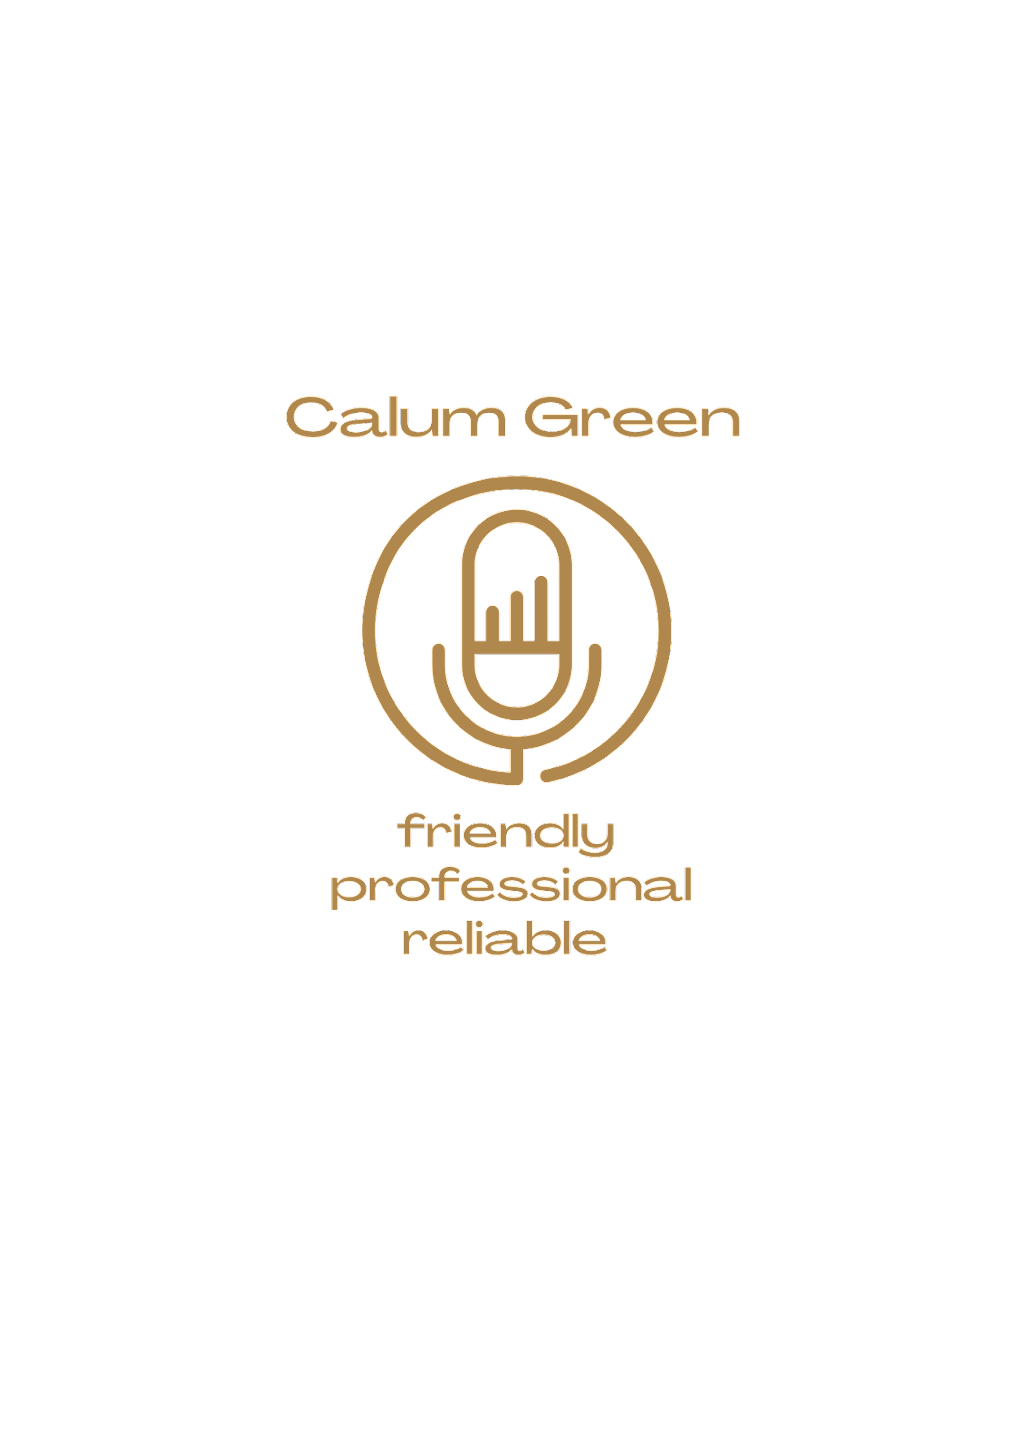 Calum Green Voice Over | Glenlea St, Keperra QLD 4054, Australia | Phone: 0439 984 337